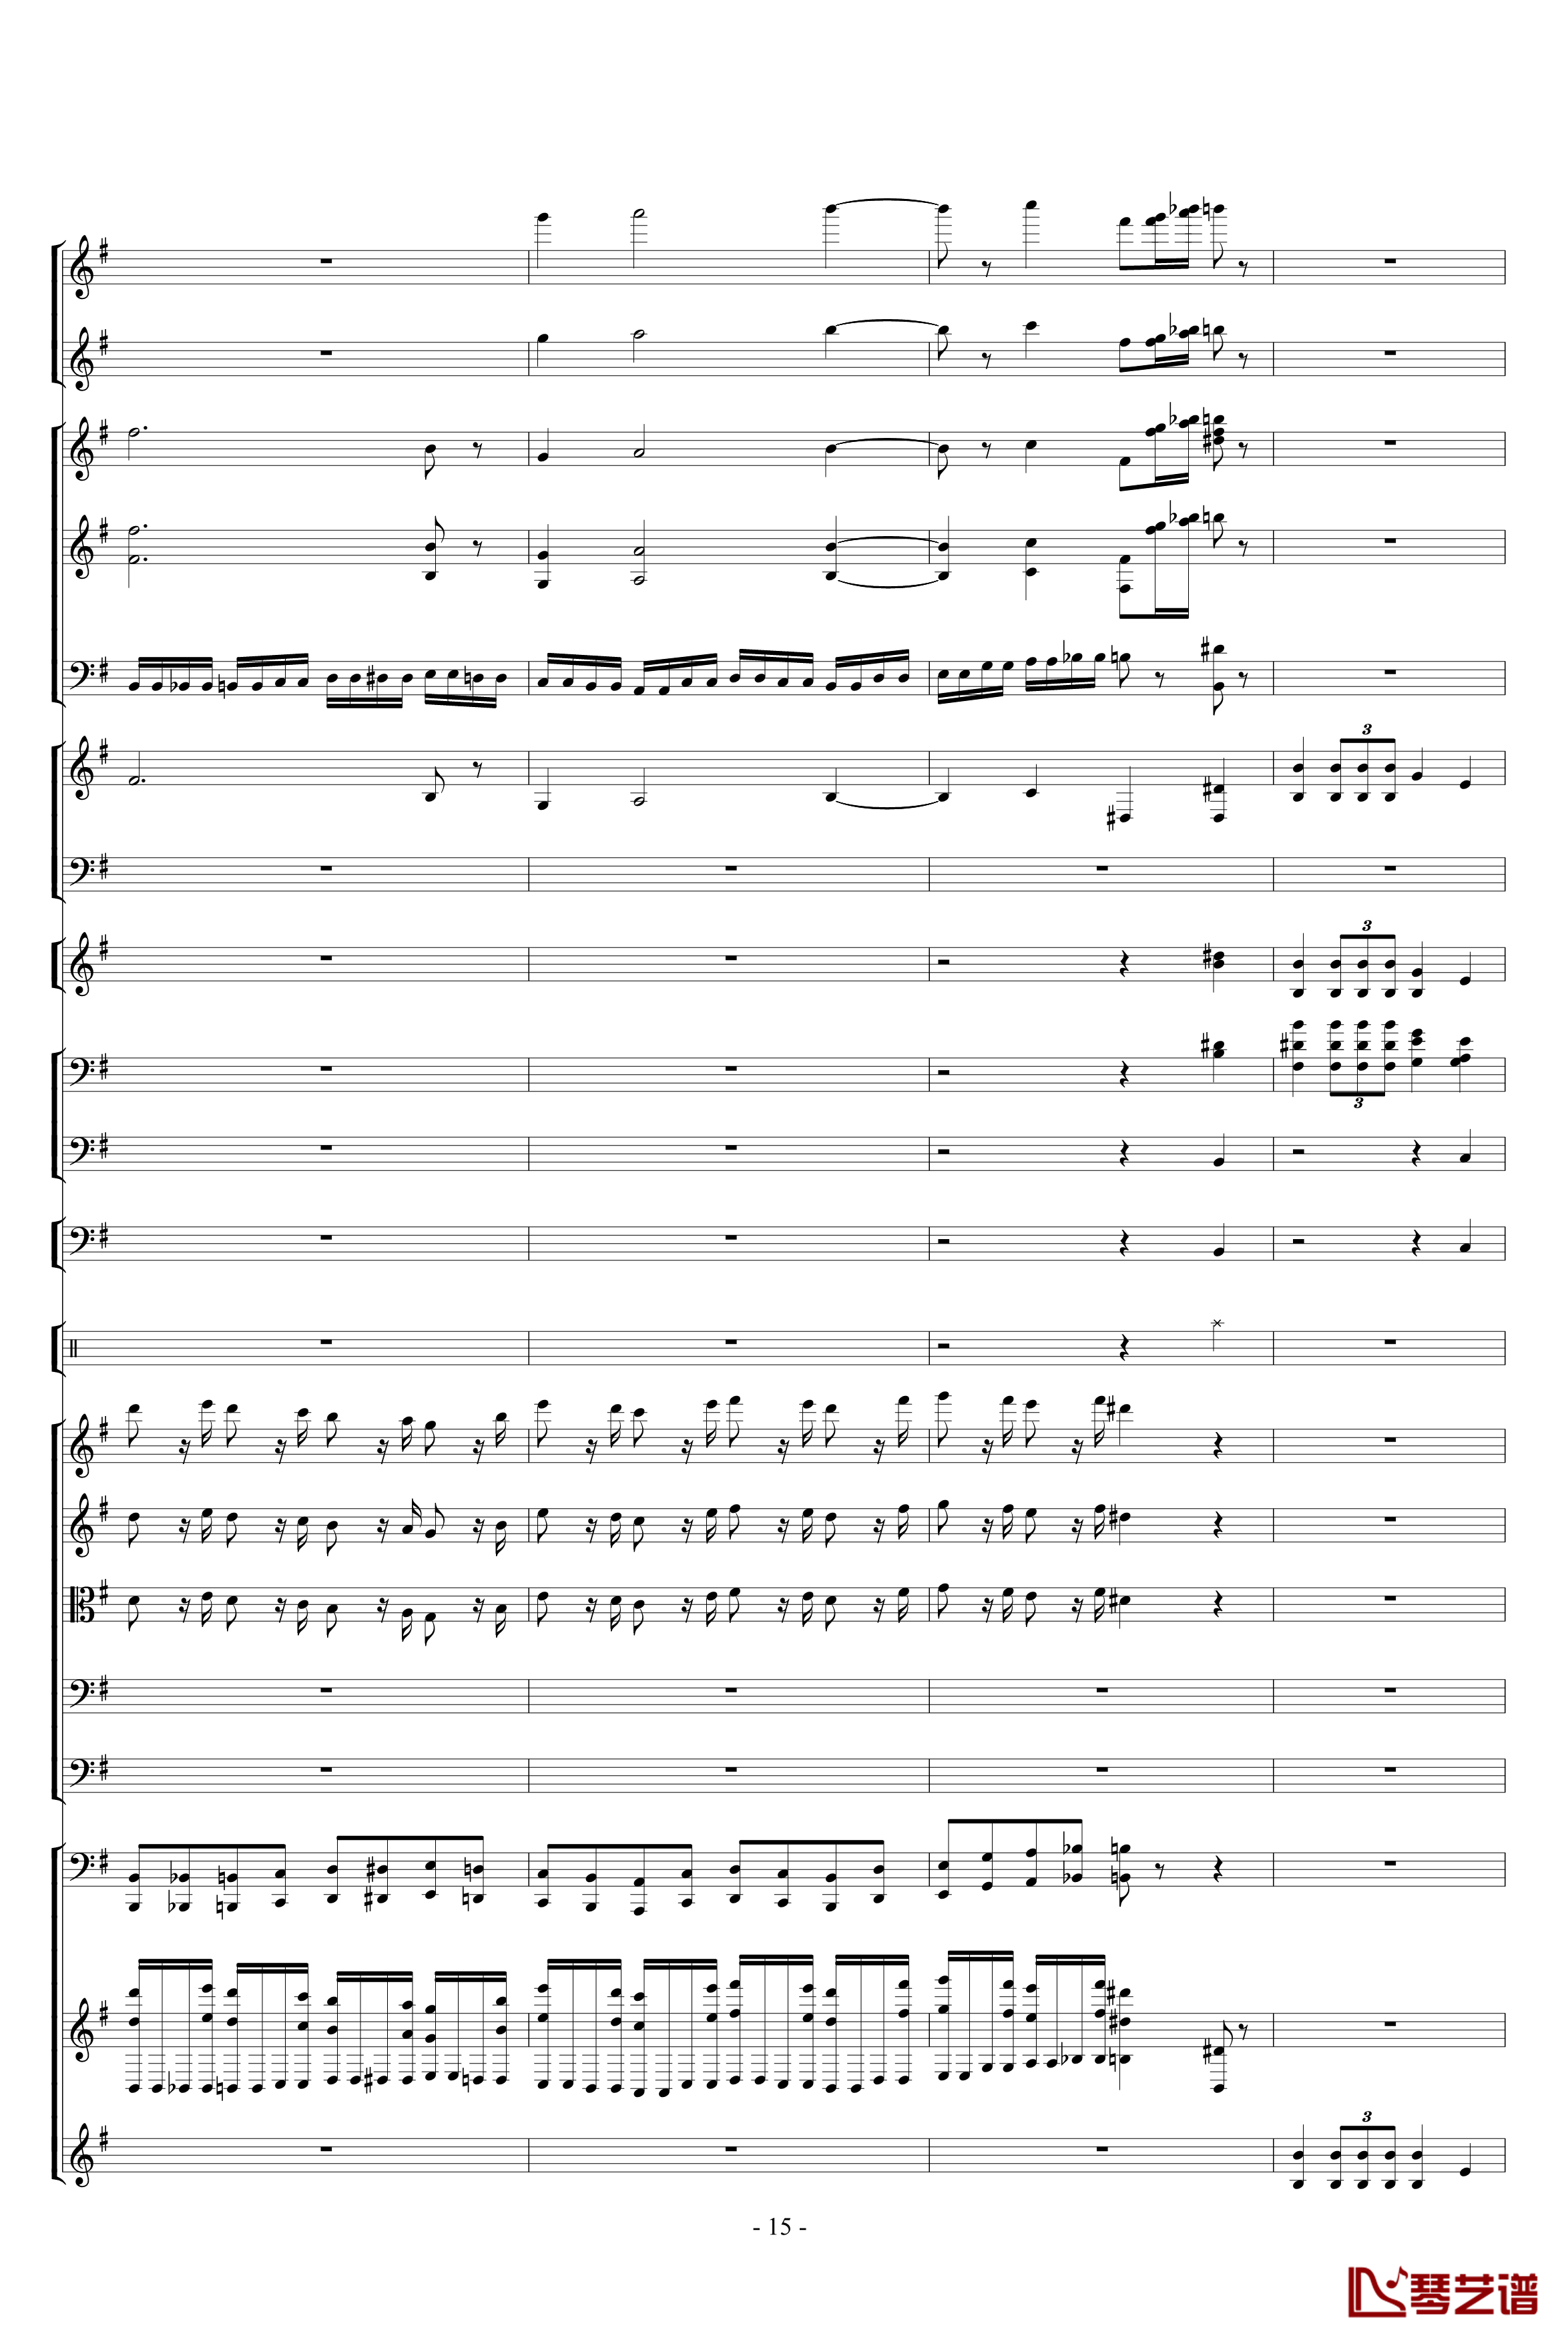 胡桃夹子组曲之进行曲钢琴谱-柴科夫斯基-Peter Ilyich Tchaikovsky15